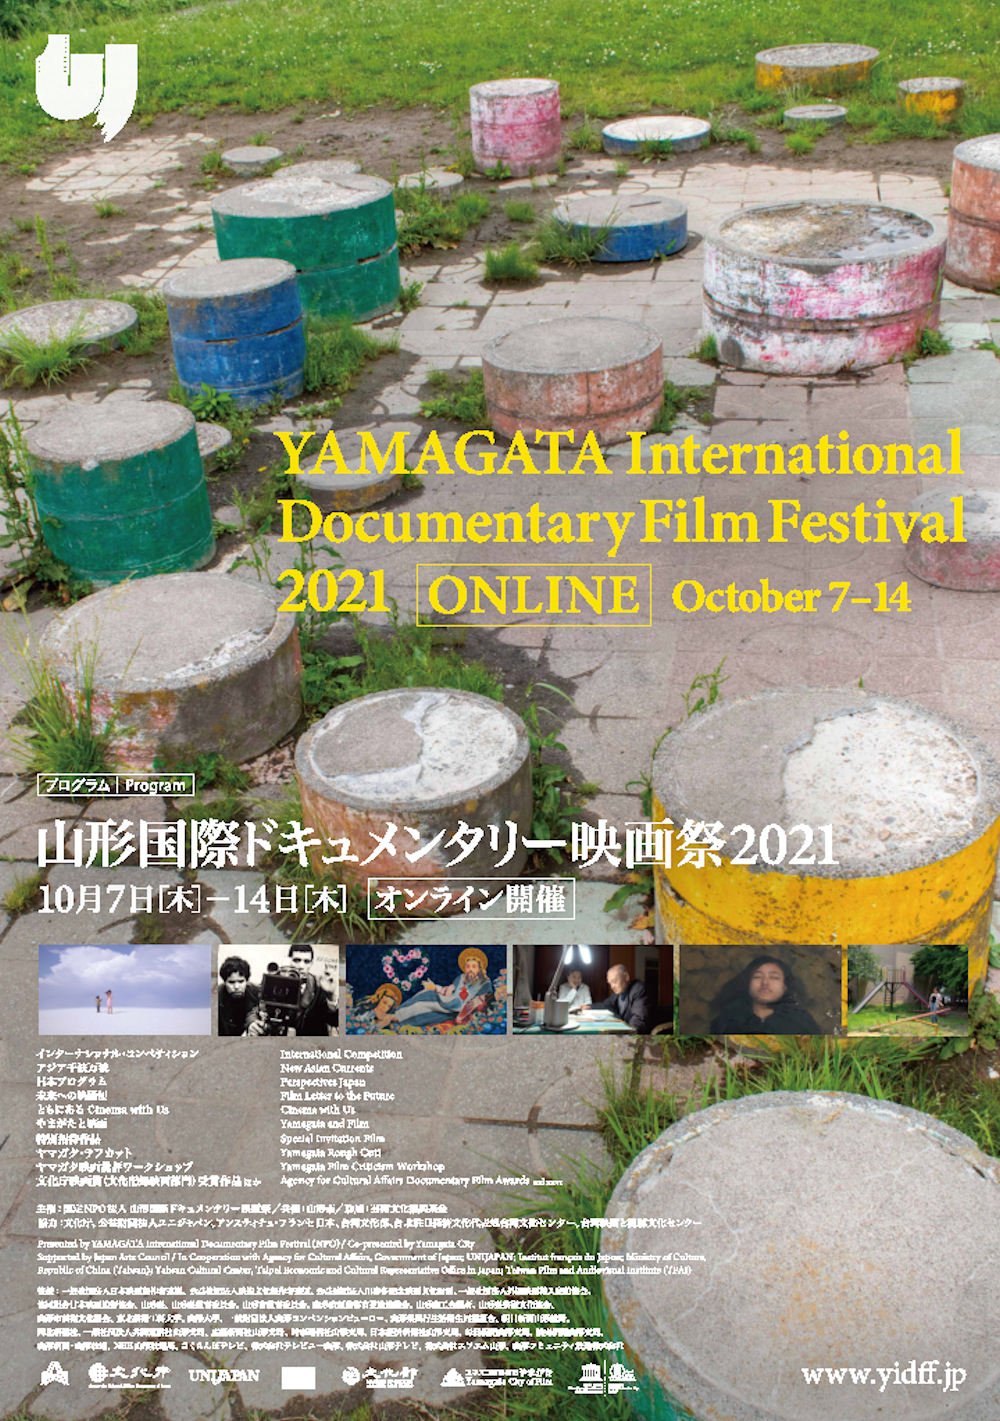 YIDFF2021program山形国際ドキュメンタリー映画祭